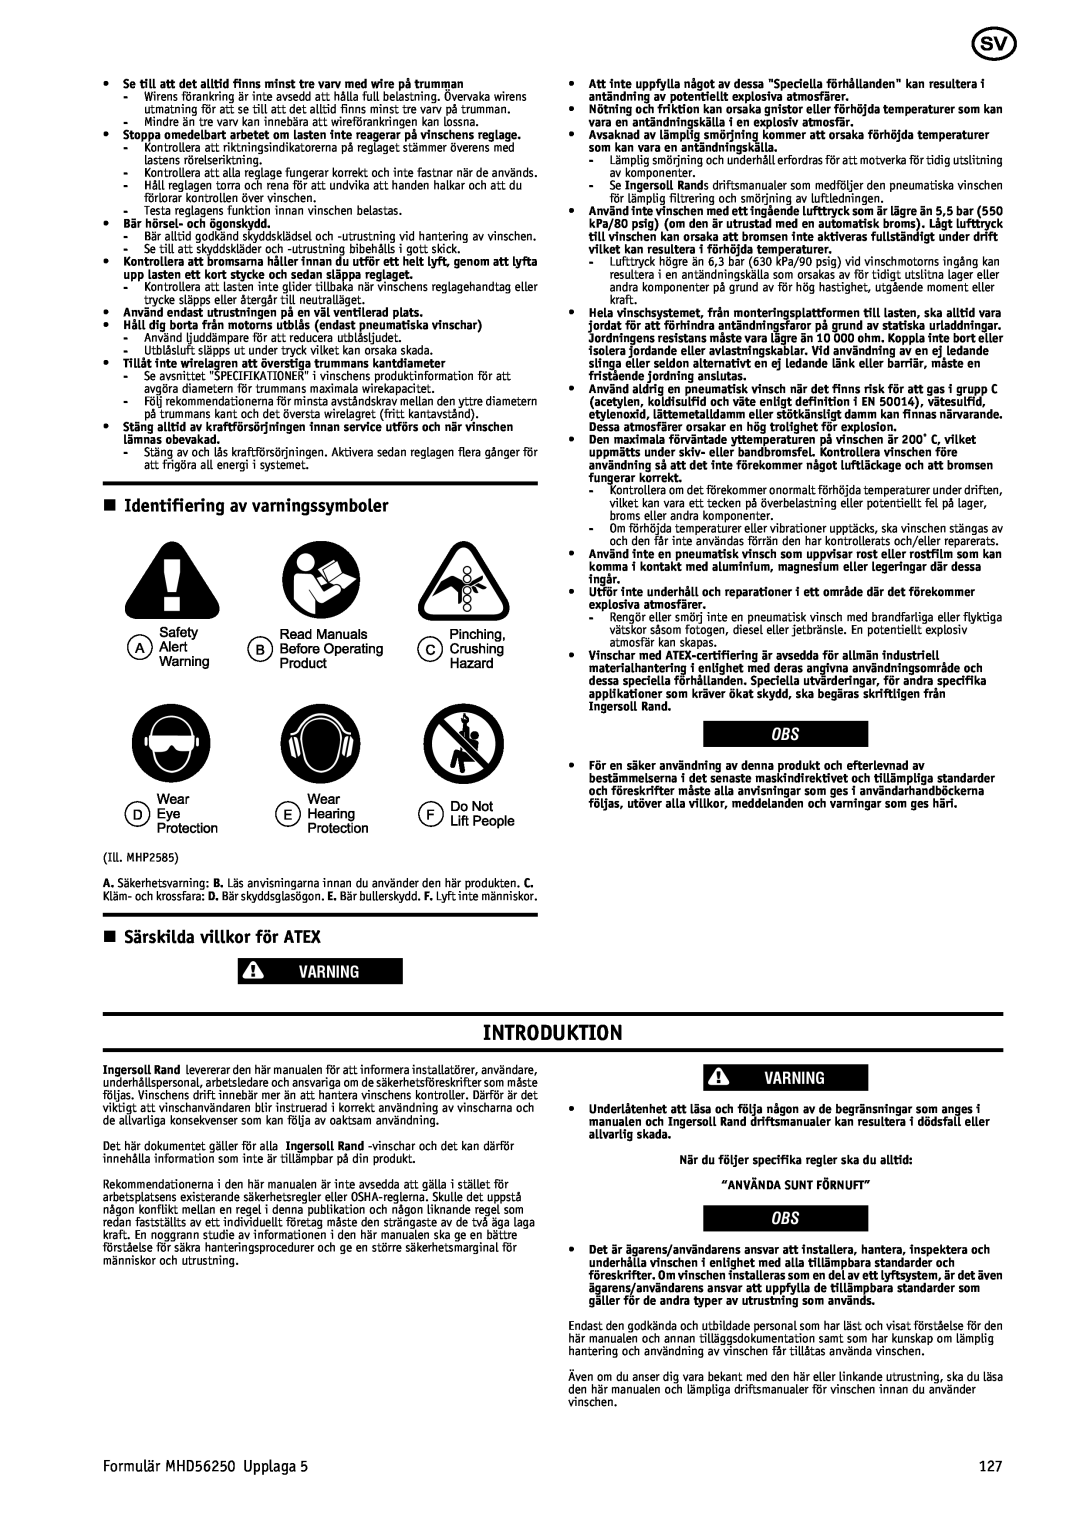 Ingersoll-Rand MHD56250 manual Introduktion, n Identifiering av varningssymboler, n Särskilda villkor för ATEX, Varning 